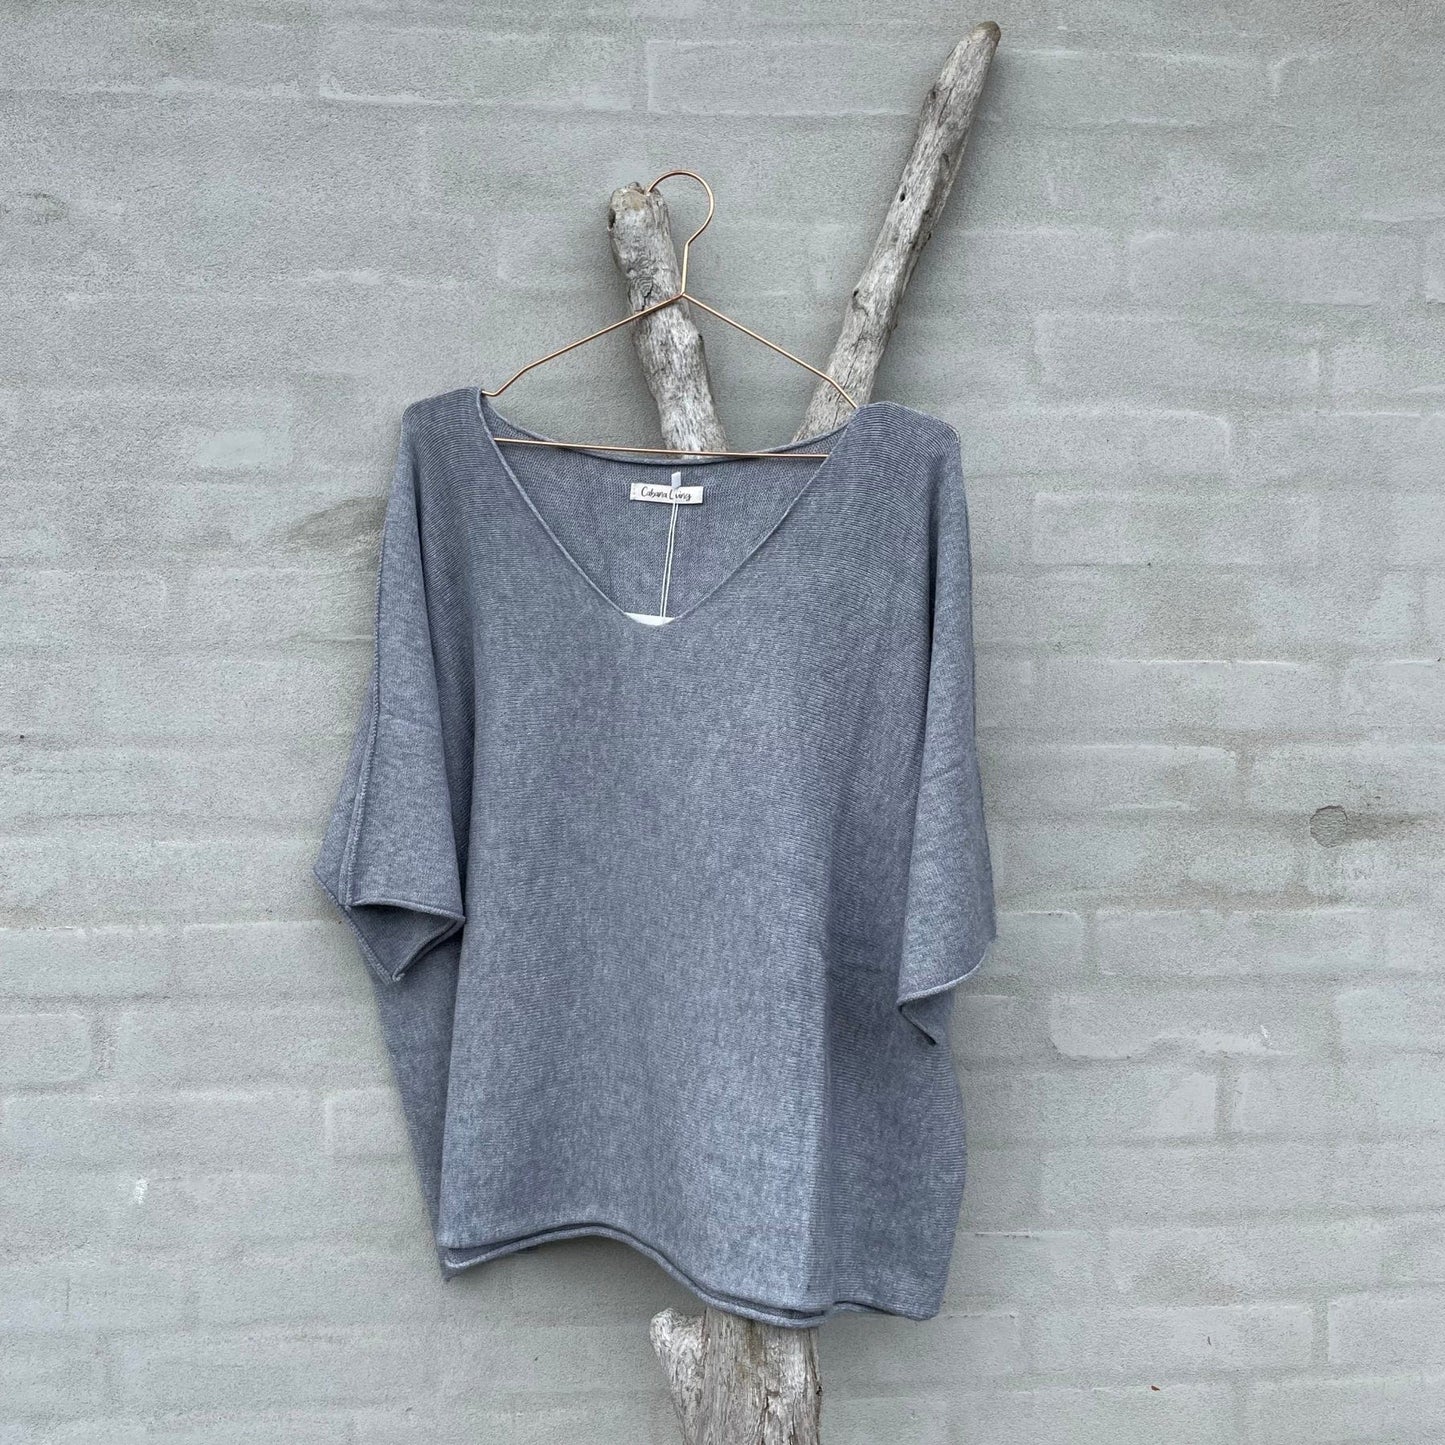 En riktig myk og herlig finstrikket grå genser med v-hals og korte ermer. Denne er noe kortere og derfor perfekt over skjorter og t-shirts. Super å ha i base garderoben.